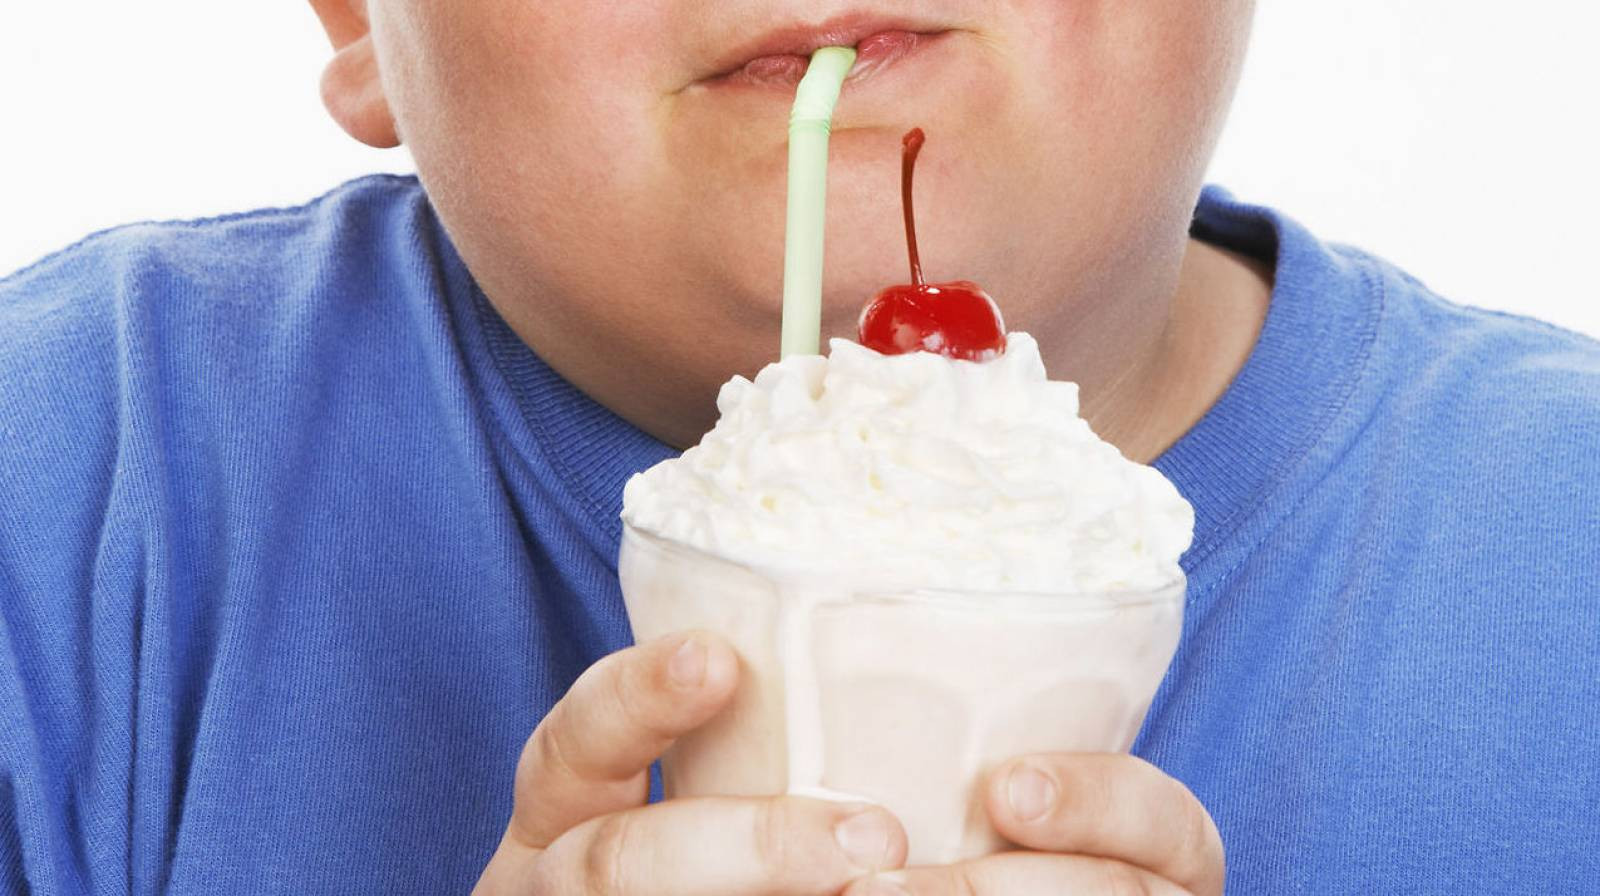 Κλείστε την τηλεόραση για να αποφύγετε την παχυσαρκία -Πόσο επηρεάζουν οι συνήθειες κατά τη διάρκεια των οικογενειακών γευμάτων